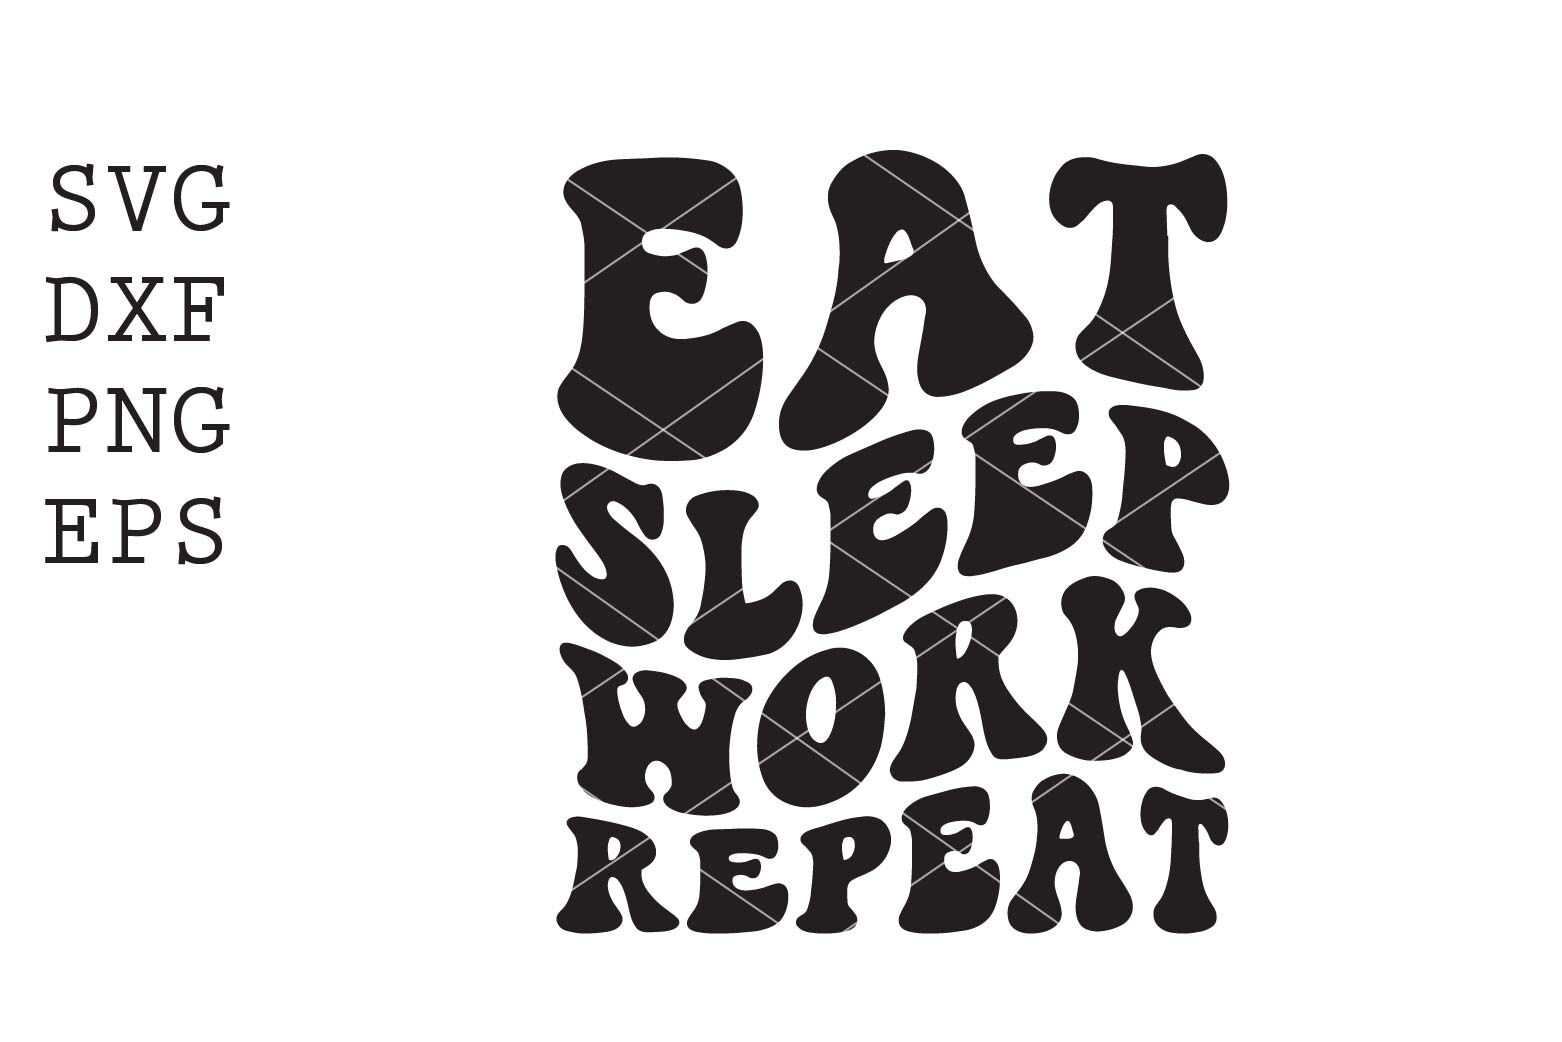 Eat sleep work repeat Royalty Free Vector Image